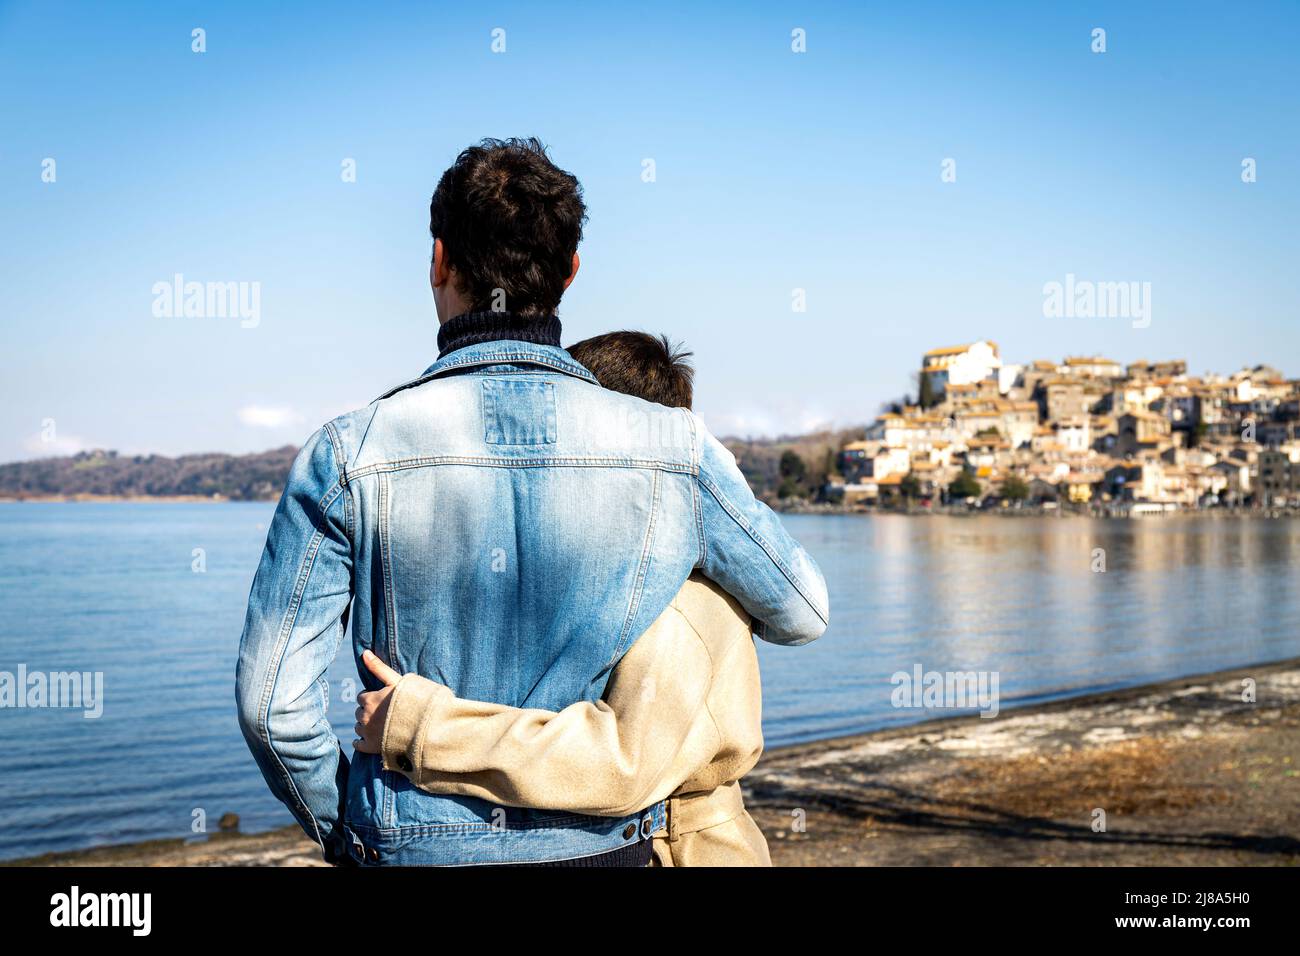 Un jeune couple embrasse sur la rive du lac Bracciano. Beau couple voyageant à Anguillara Sabazia en Latium, Italie. Atmosphère romantique et copie s Banque D'Images